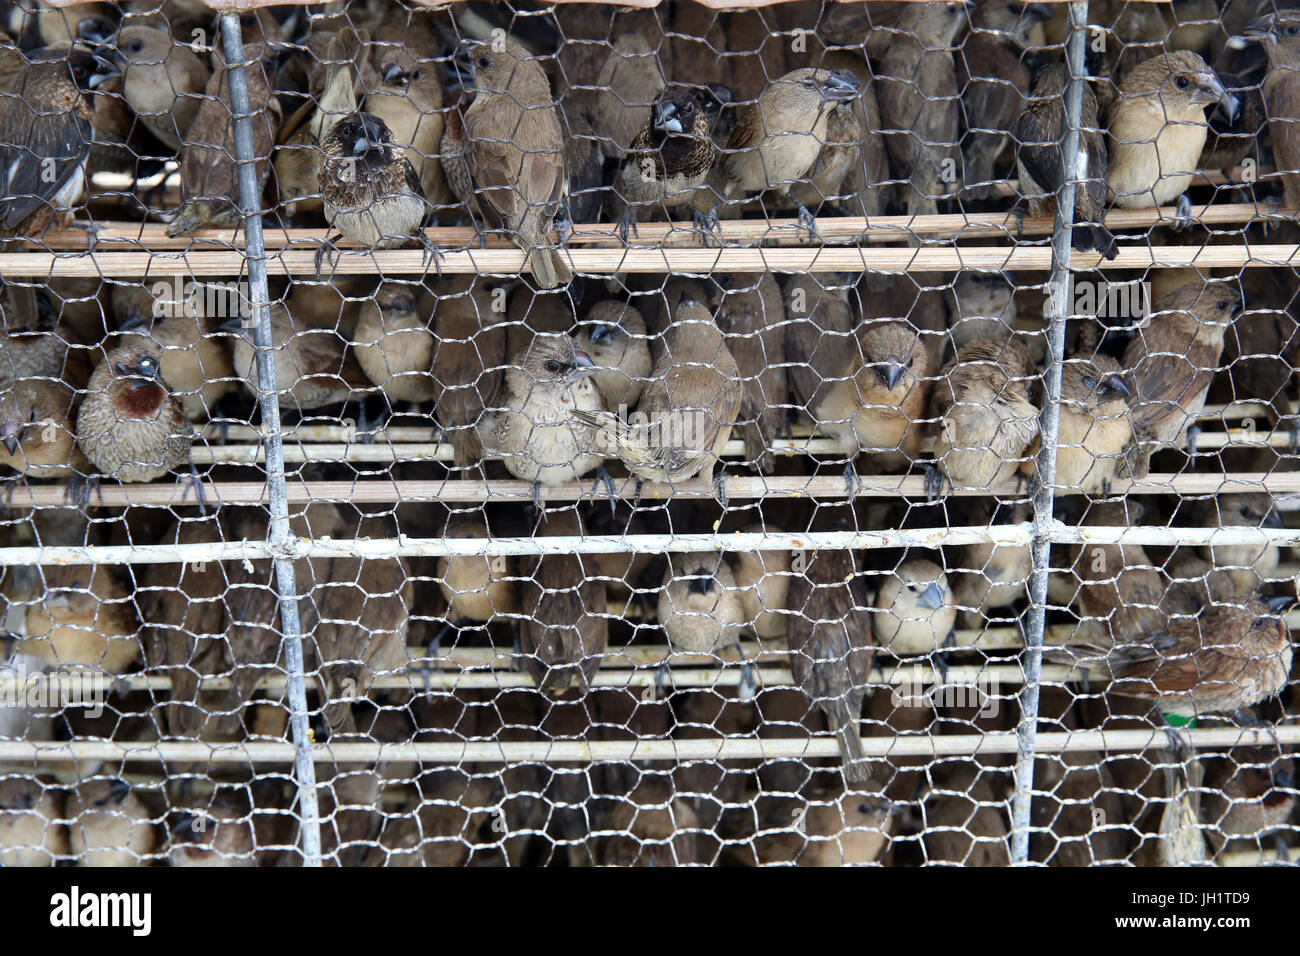 Los budistas creen que la liberación de las aves en el medio silvestre puede ayudar a una persona a acumular mérito. Vung Tau. Vietnam. Foto de stock